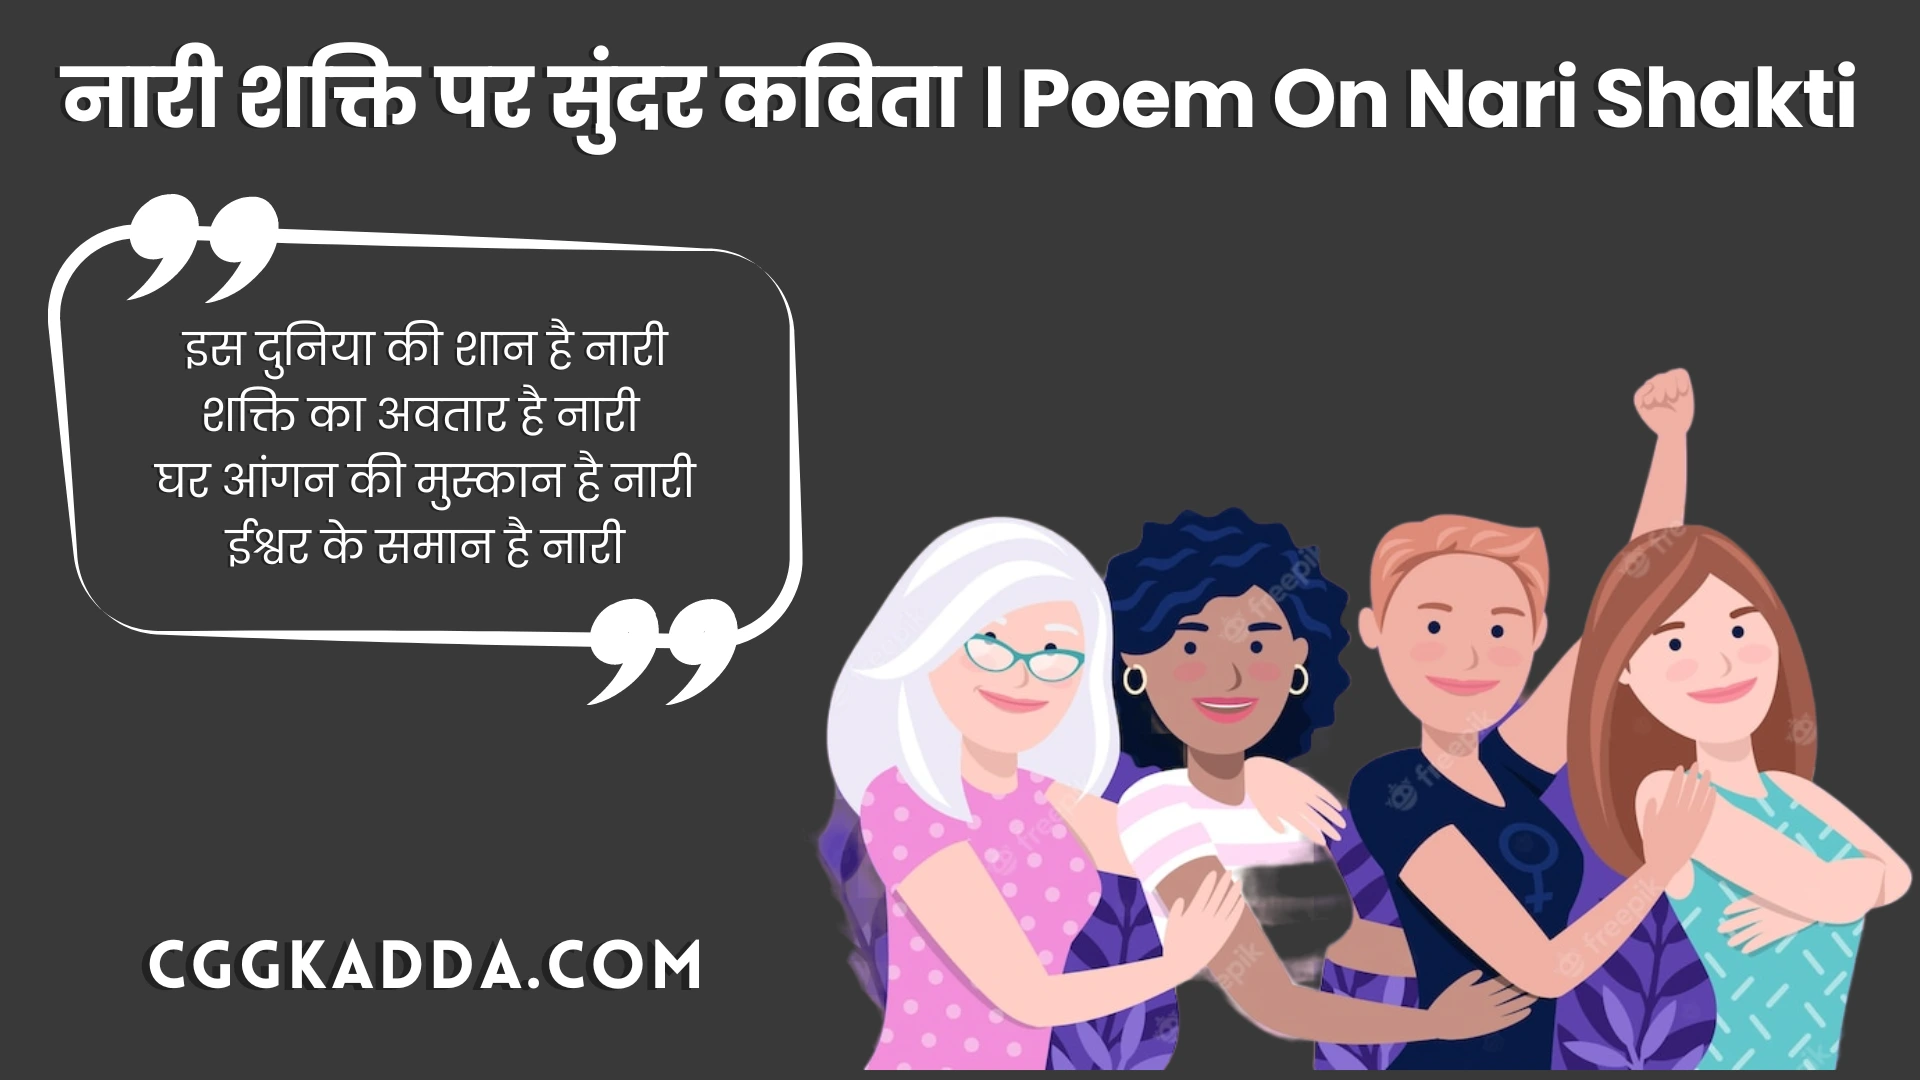 नारी शक्ति पर कविता। Poem On Nari Shakti In Hindi